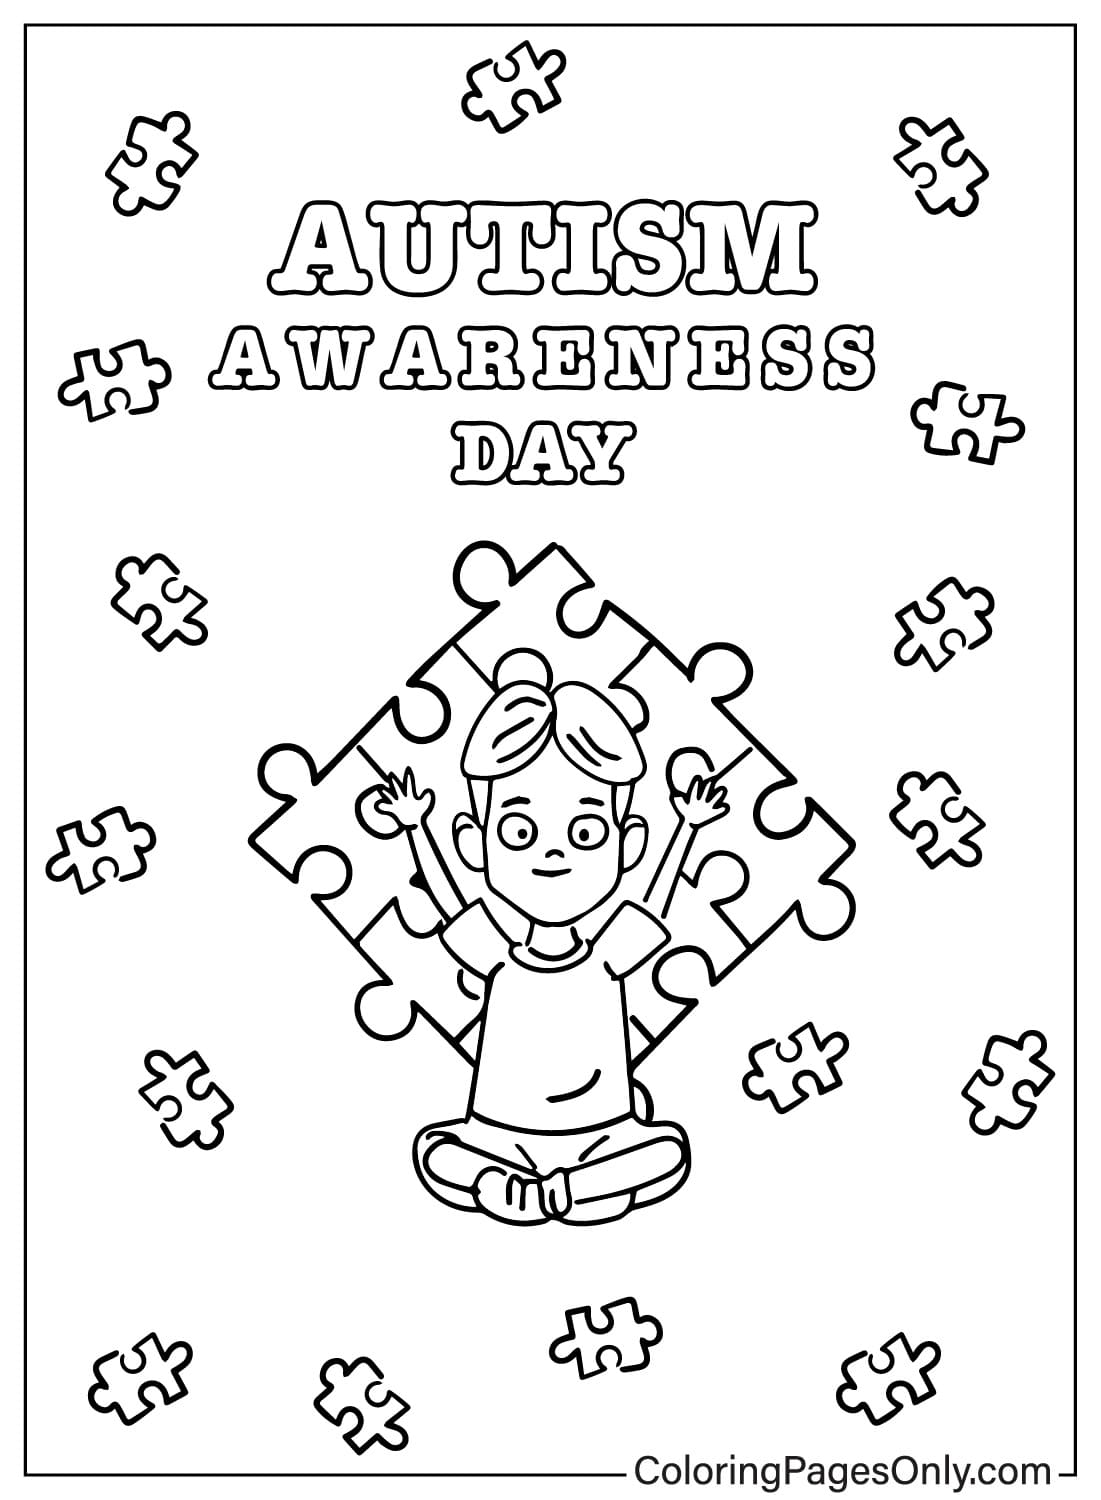 Páginas para colorear de concientización sobre el autismo para descargar del Día Mundial de Concientización sobre el Autismo